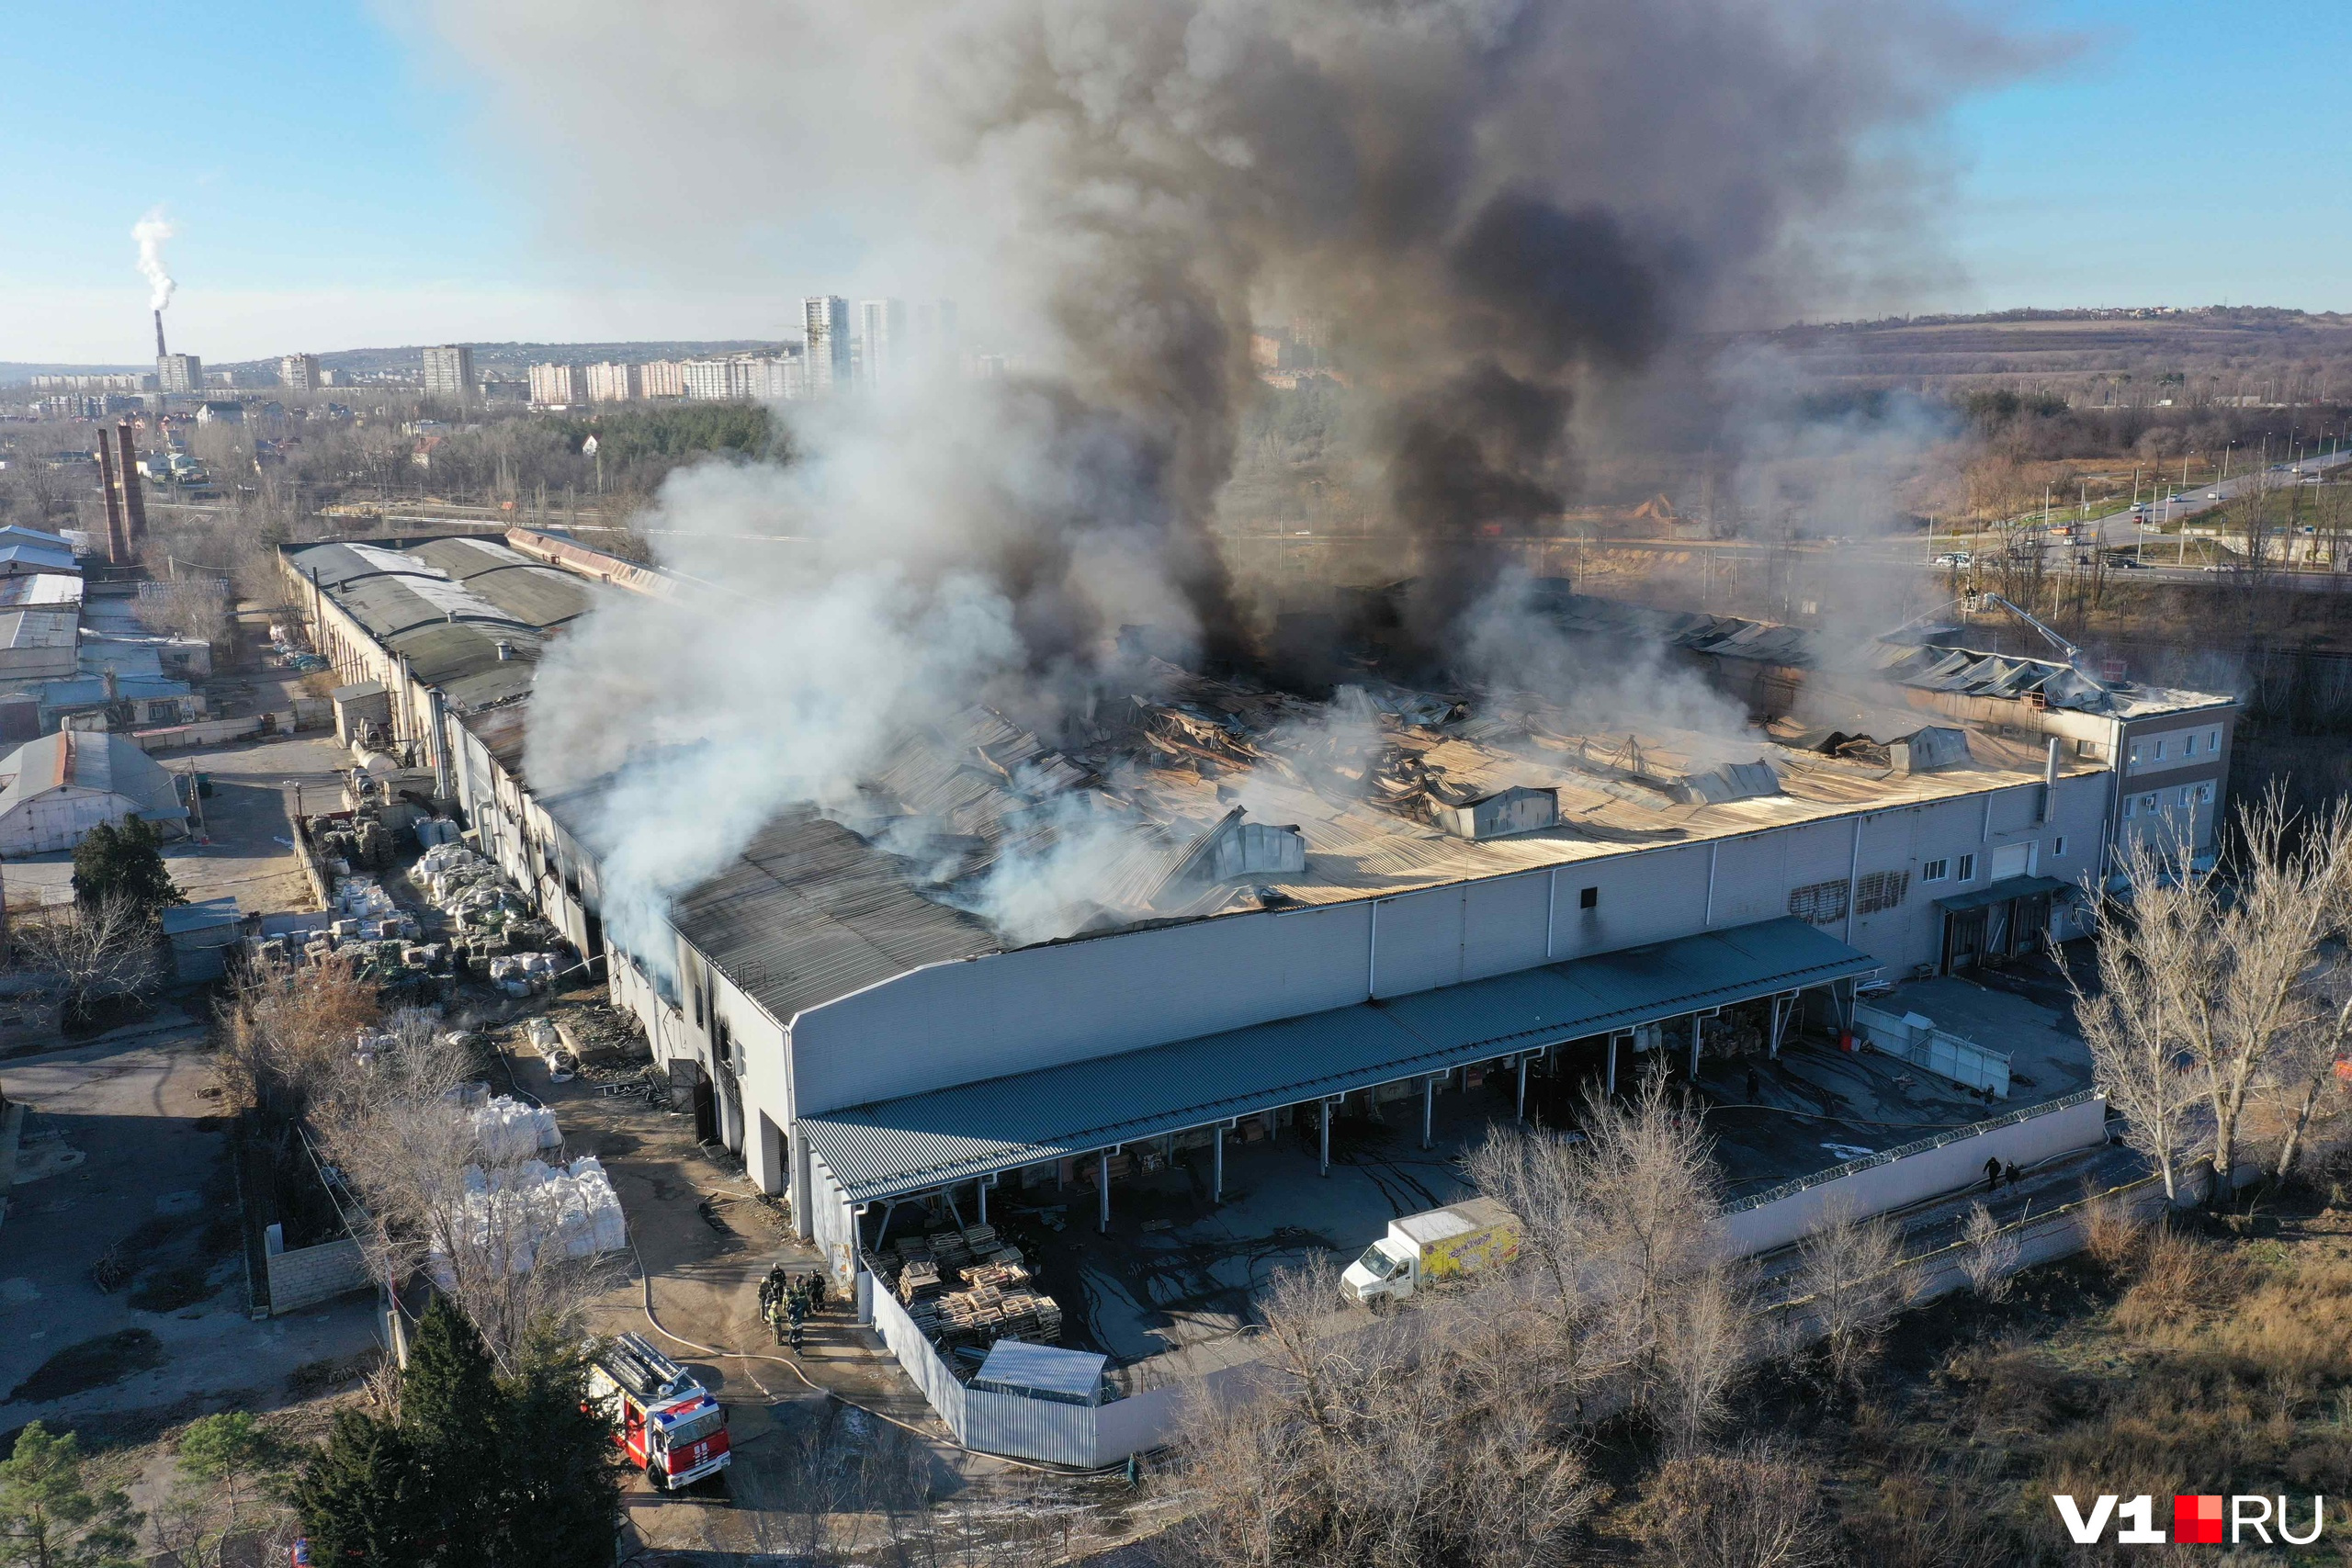 1,5 тысячи квадратных метров складов были охвачены огнем